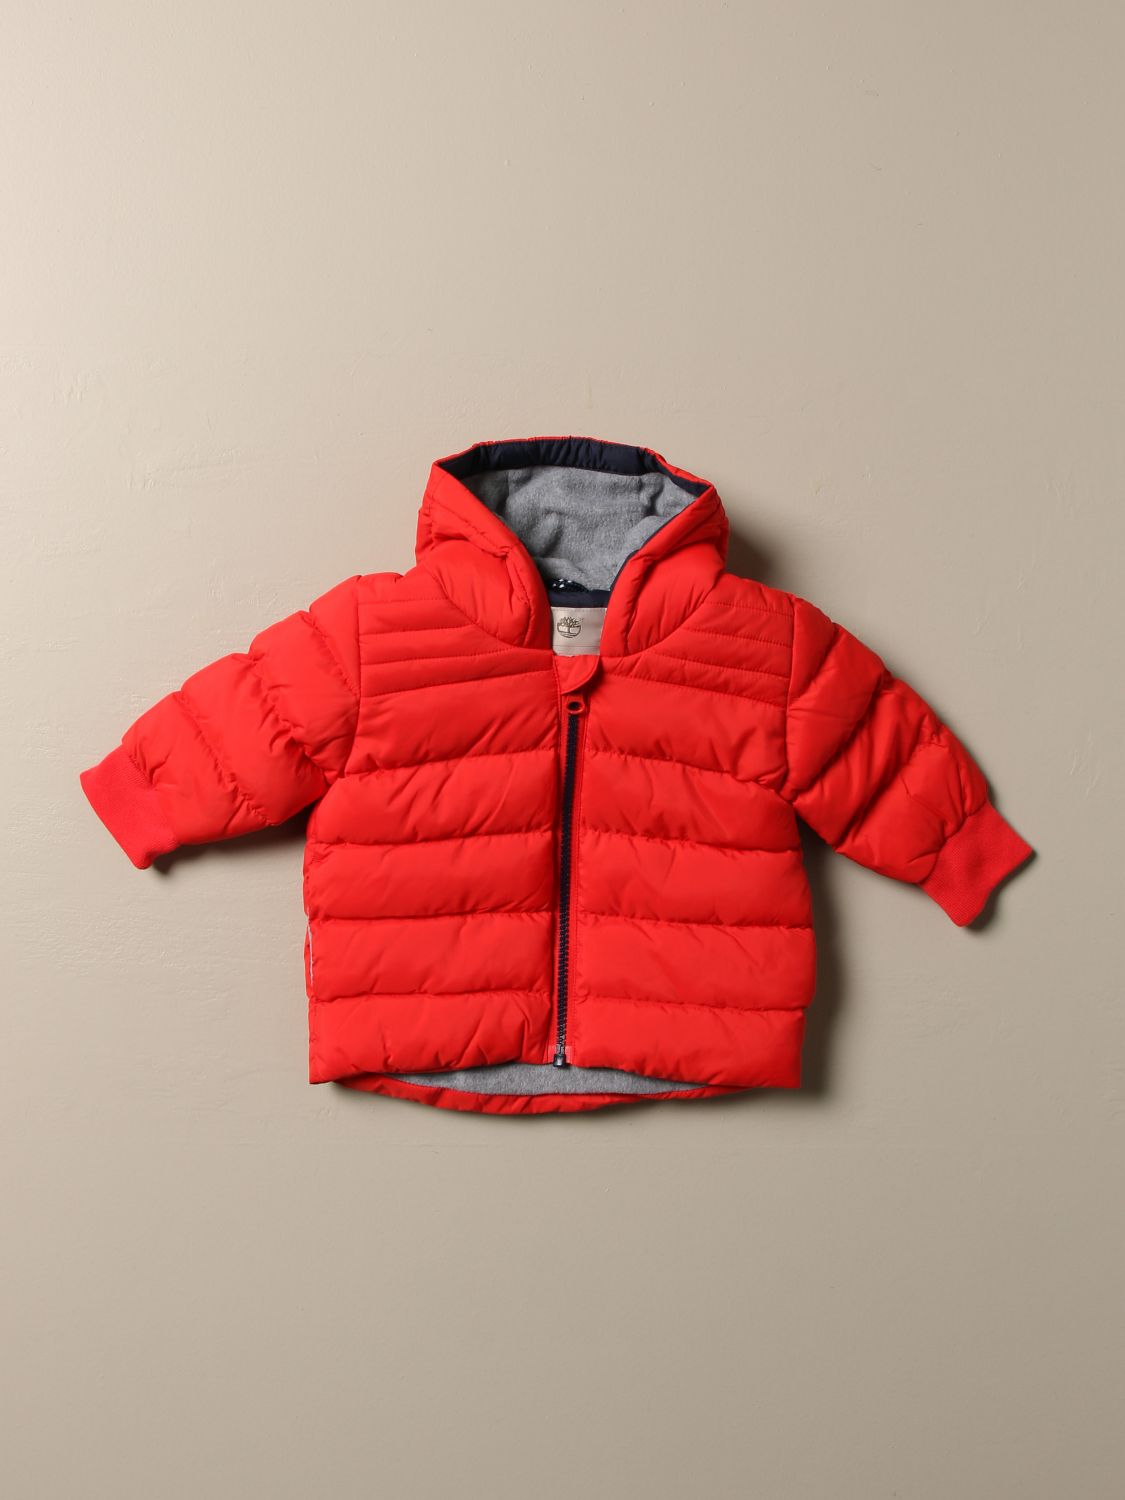 timberland toddler jacket